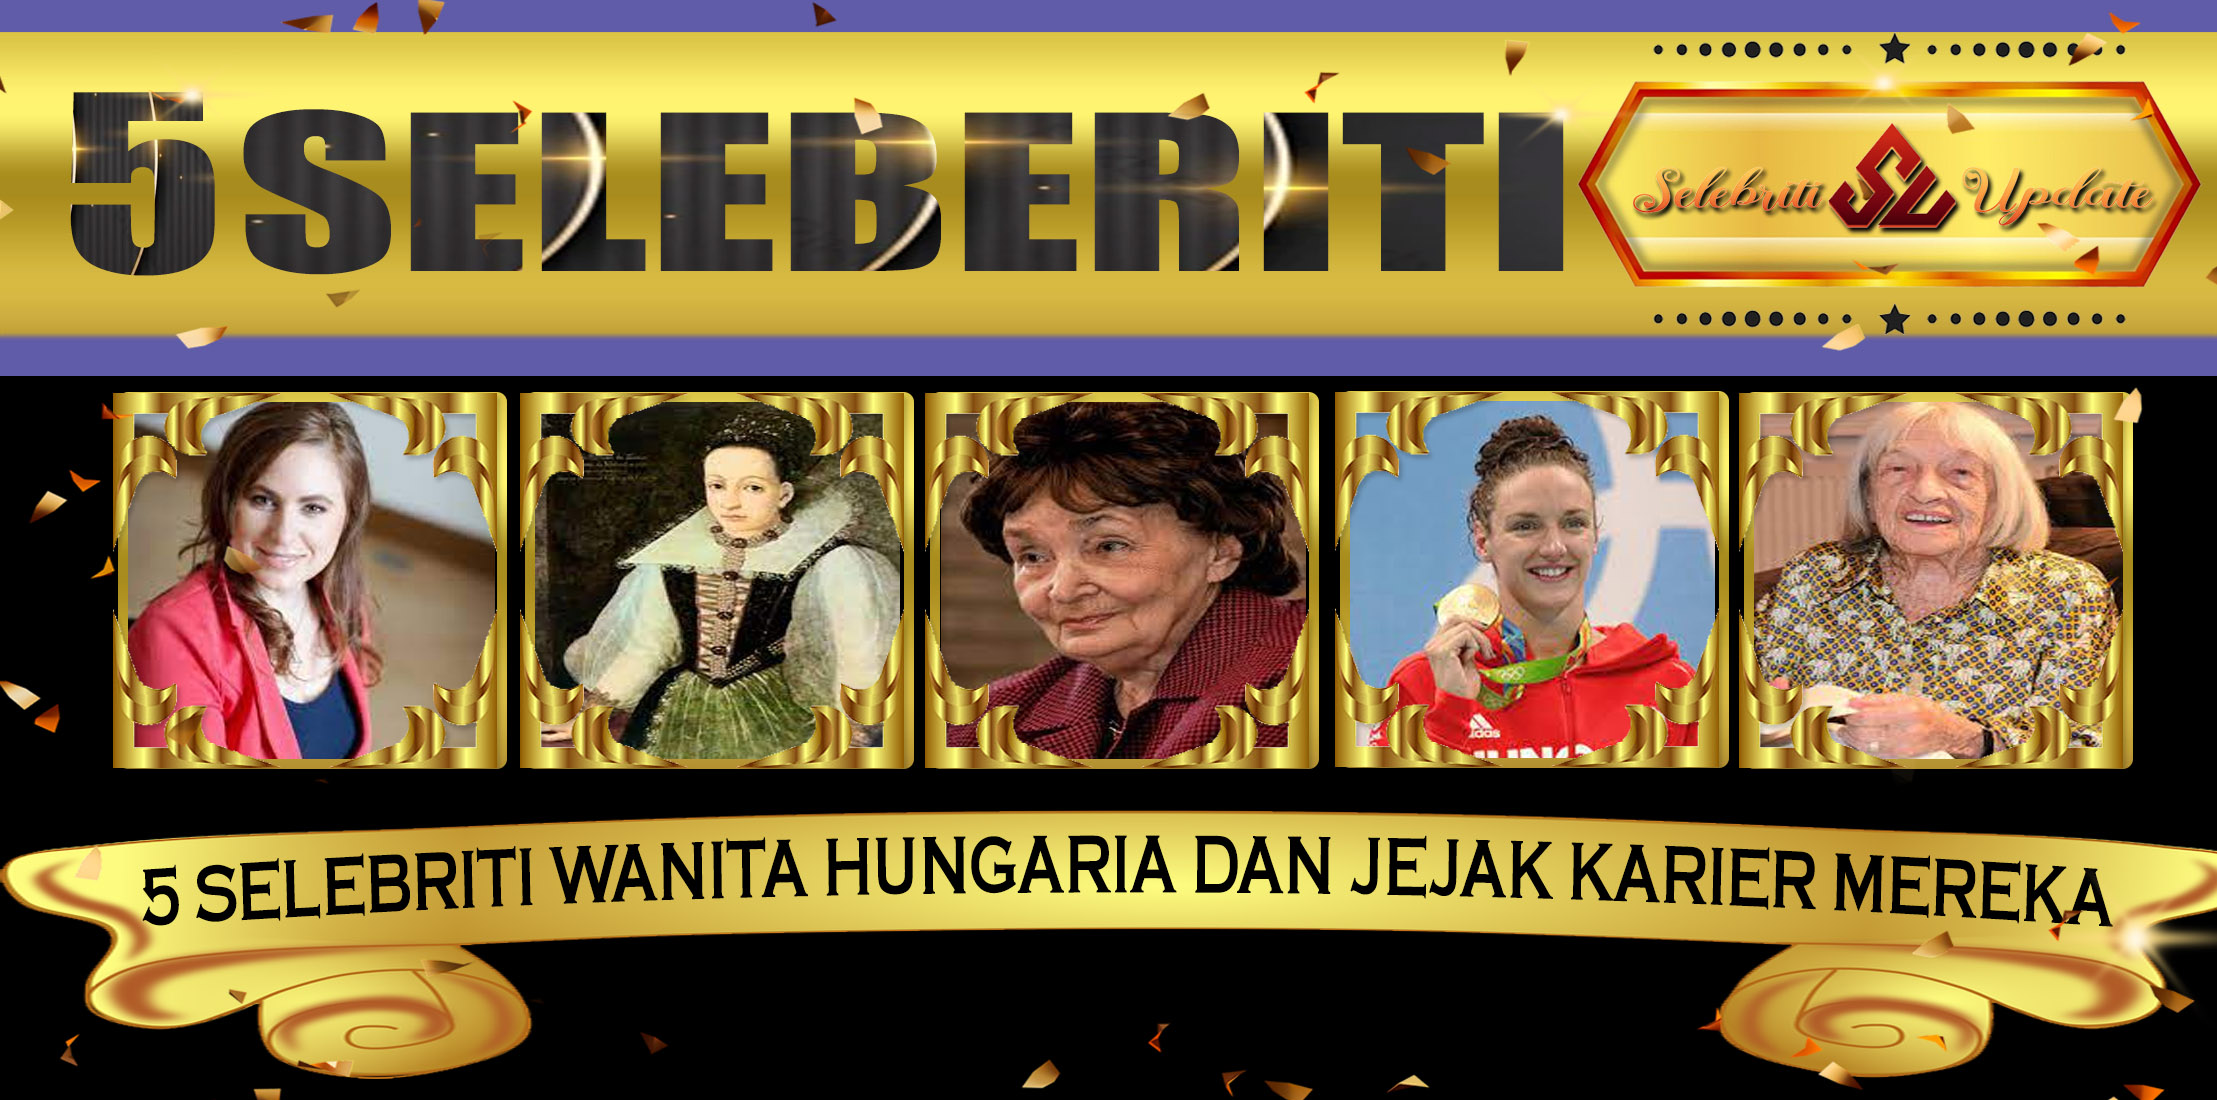 5 Selebriti Wanita Hungaria dan Jejak Karier Mereka